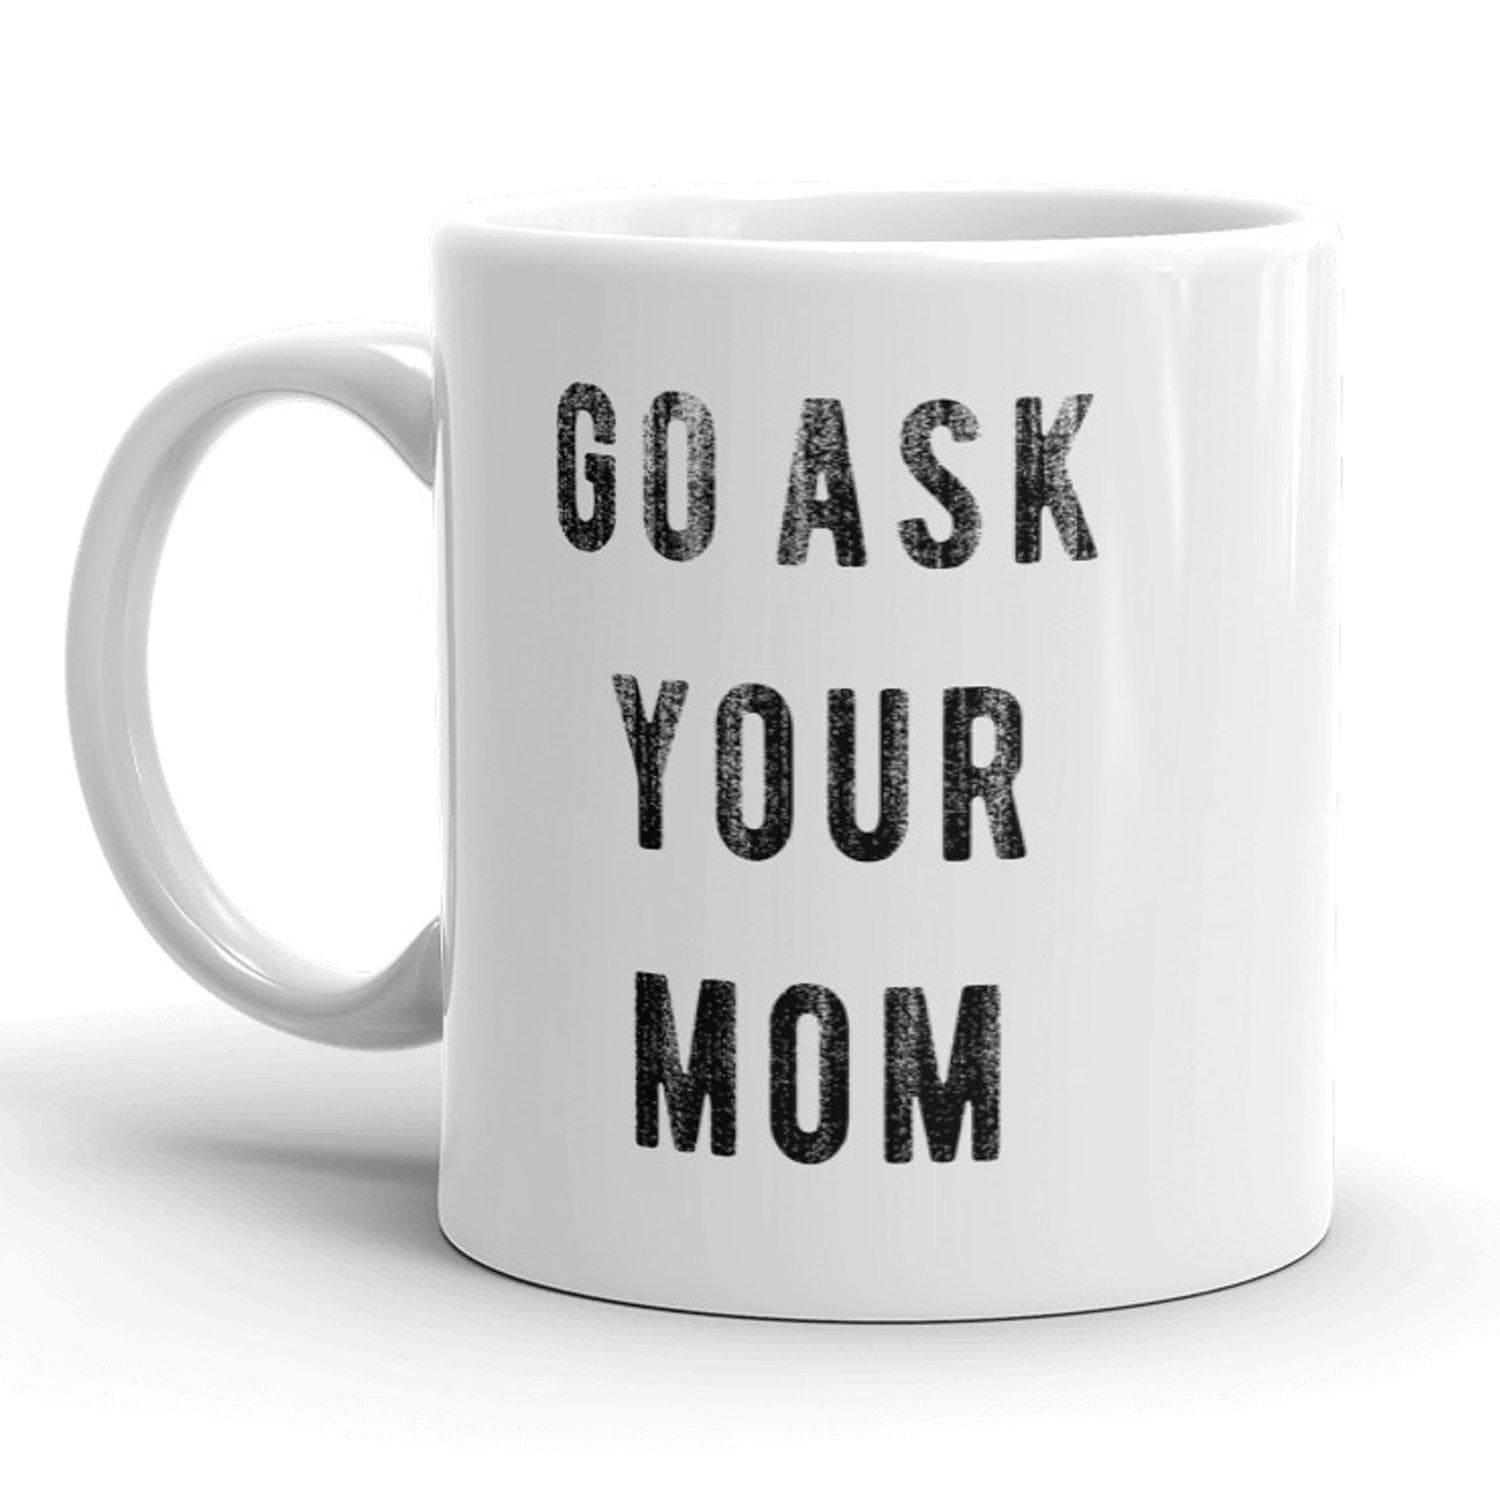 Go Ask Your Mom Mug - Crazy Dog T-Shirts